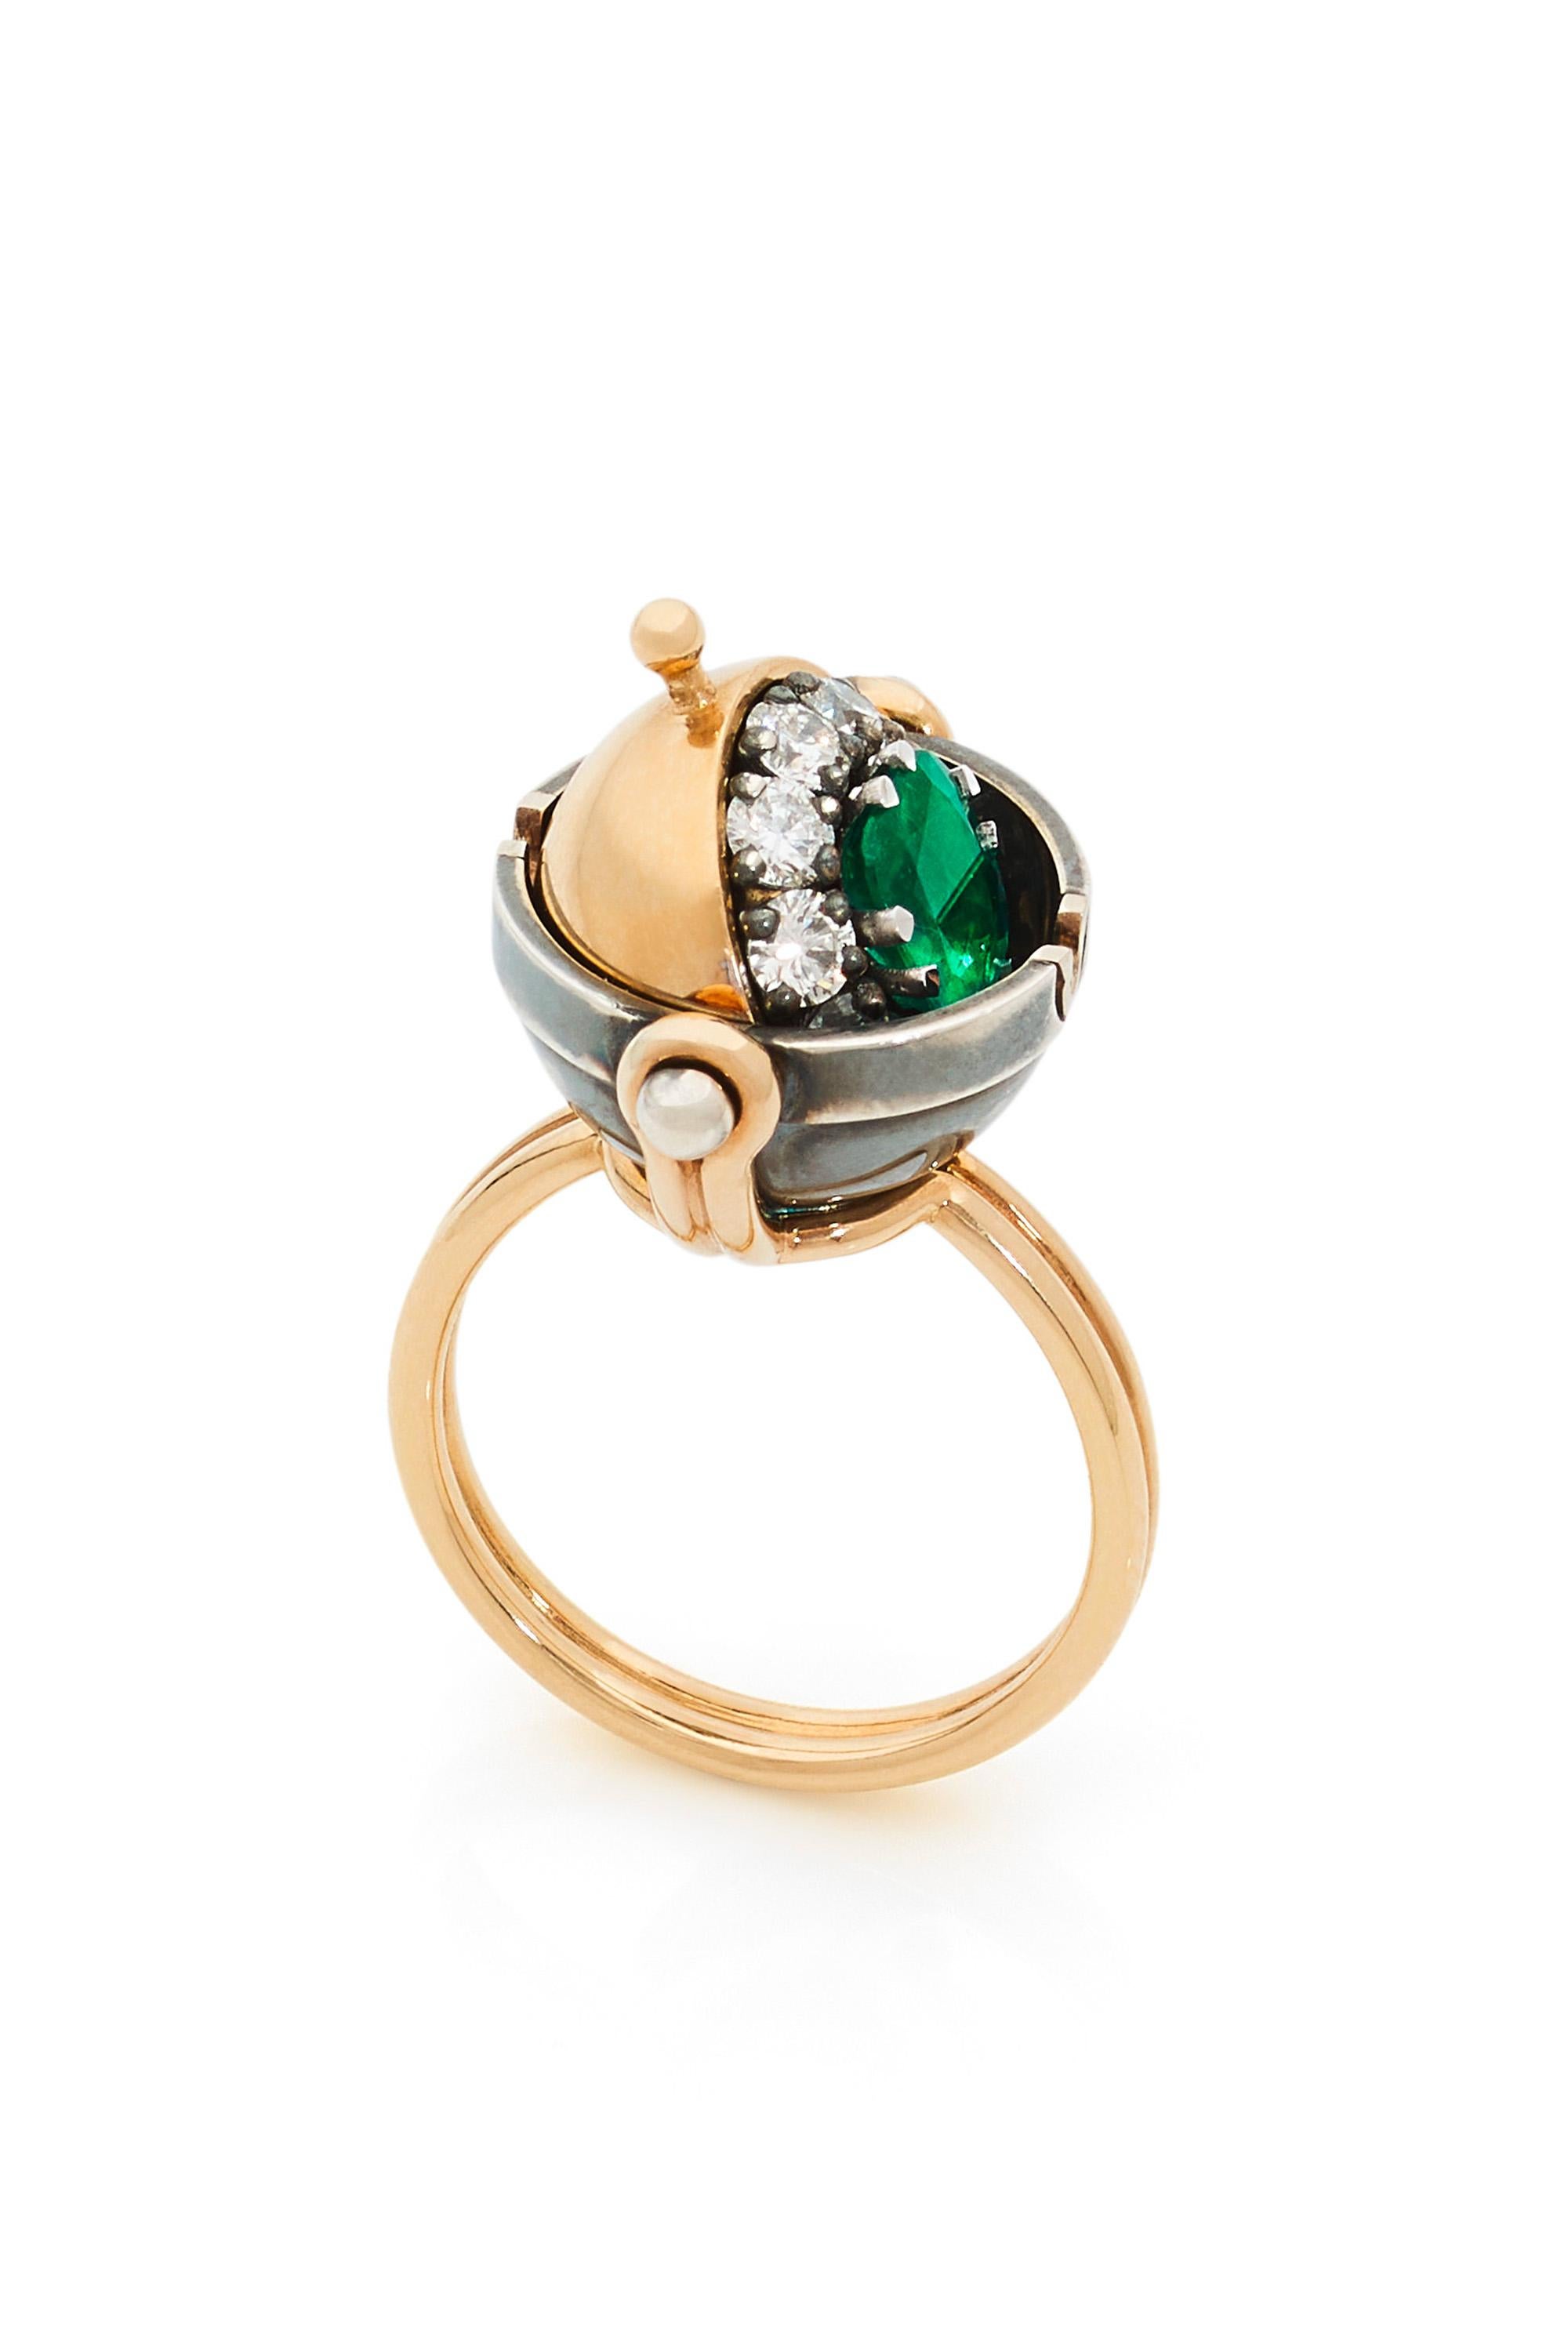 Ring aus Gold und Silber. Drehbare Kugel, besetzt mit einem Sterndiamanten, der einen von Diamanten umgebenen Smaragd im Kissenschliff enthüllt.

Einzelheiten:
Smaragd: 0,8 Karat
10 Diamanten: 0,65 Karat
18k Gold: 6,6 g 
Distressed Silber: 5